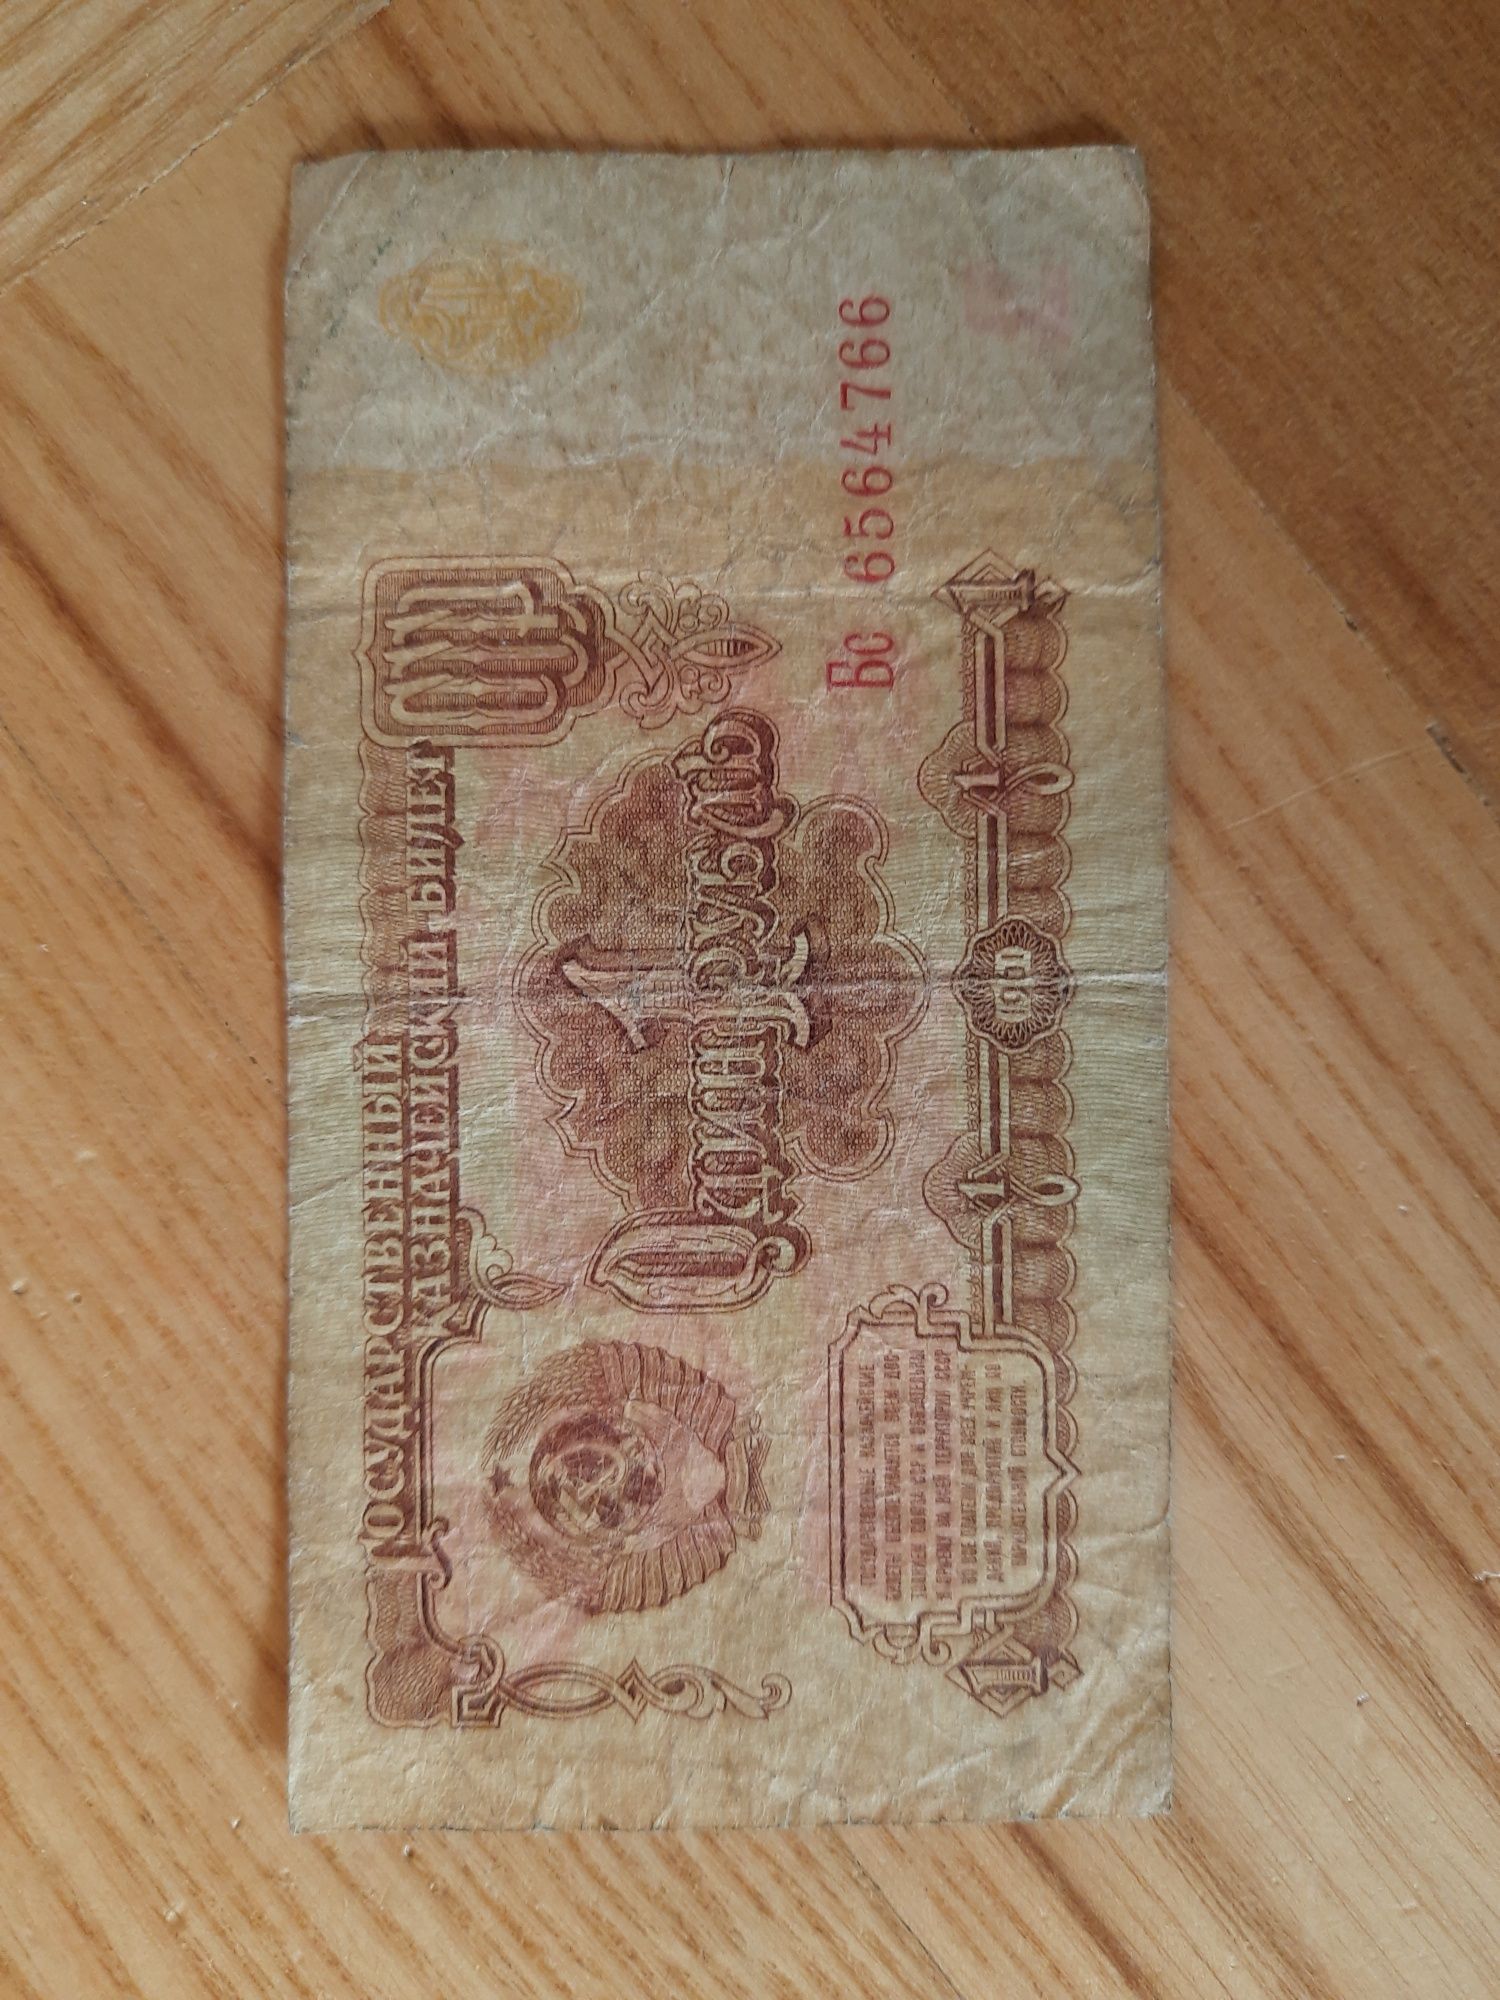 Sprzedam banknot 1 - rublowy z roku 1961